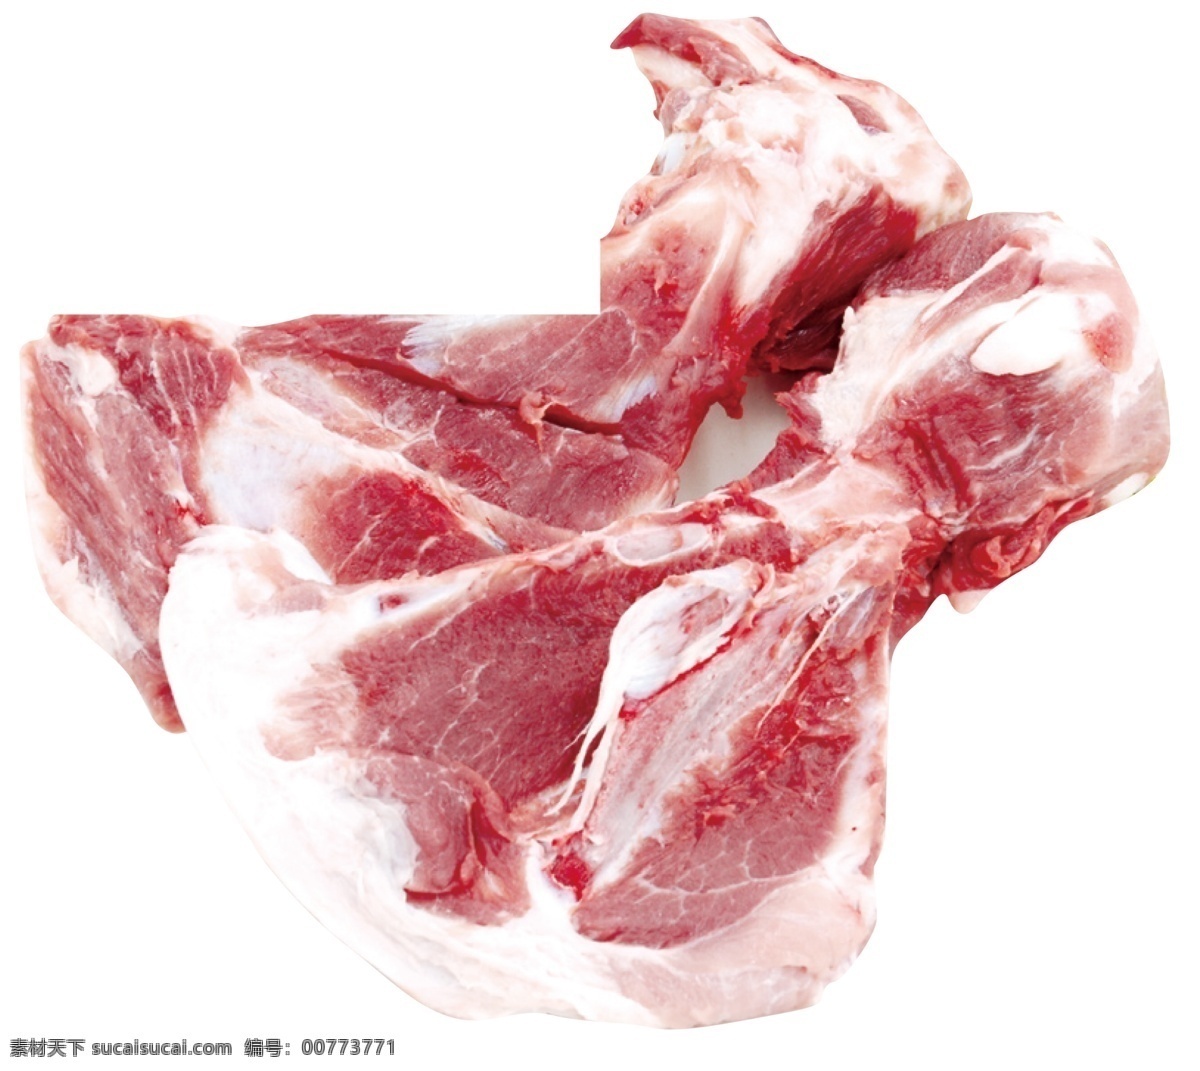 汤骨 扇子骨 生鲜 白条 猪肉 杂骨 肉骨 筒骨 超市设计 生物世界 家禽家畜